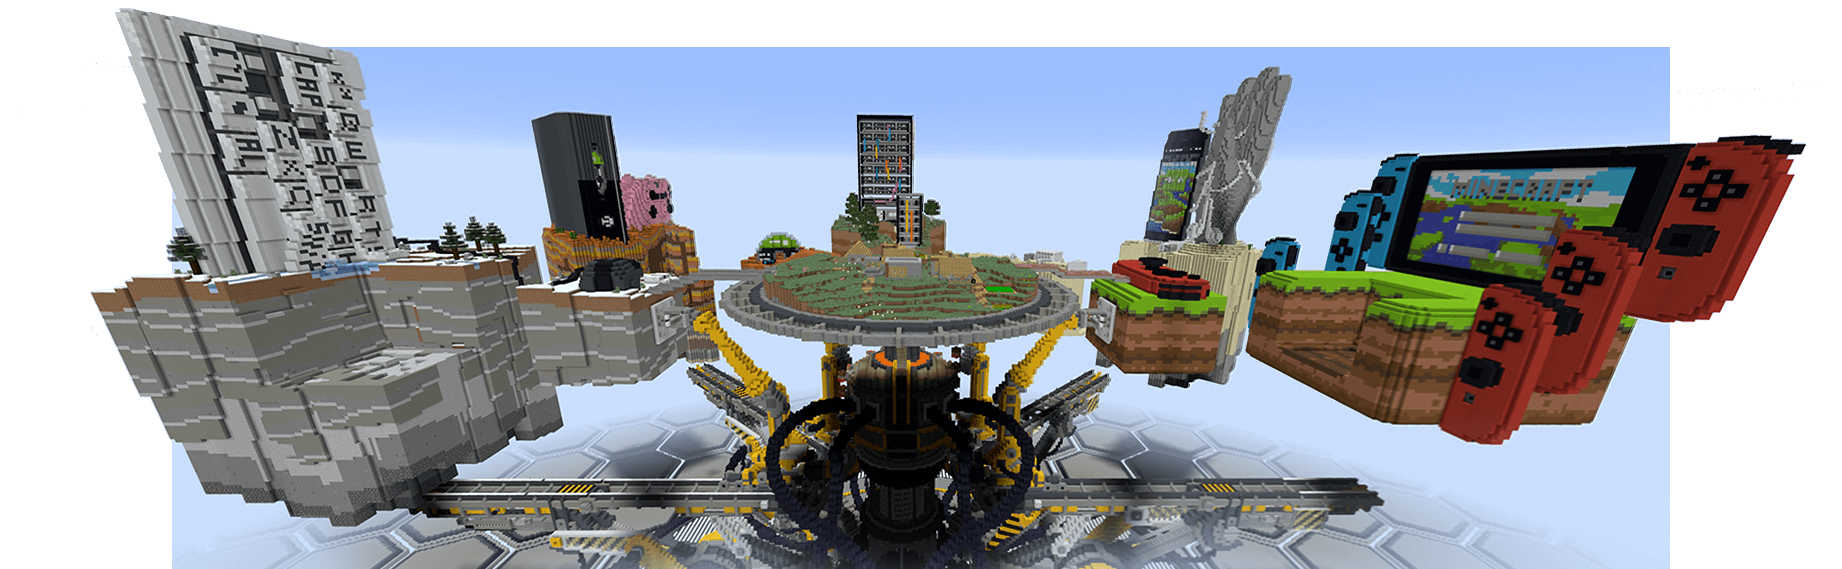 Minecraft Togetherness Machine, que representa a las plataformas en las que se puede jugar a Minecraft: PC, Xbox, dispositivo móvil y Nintendo Switch.